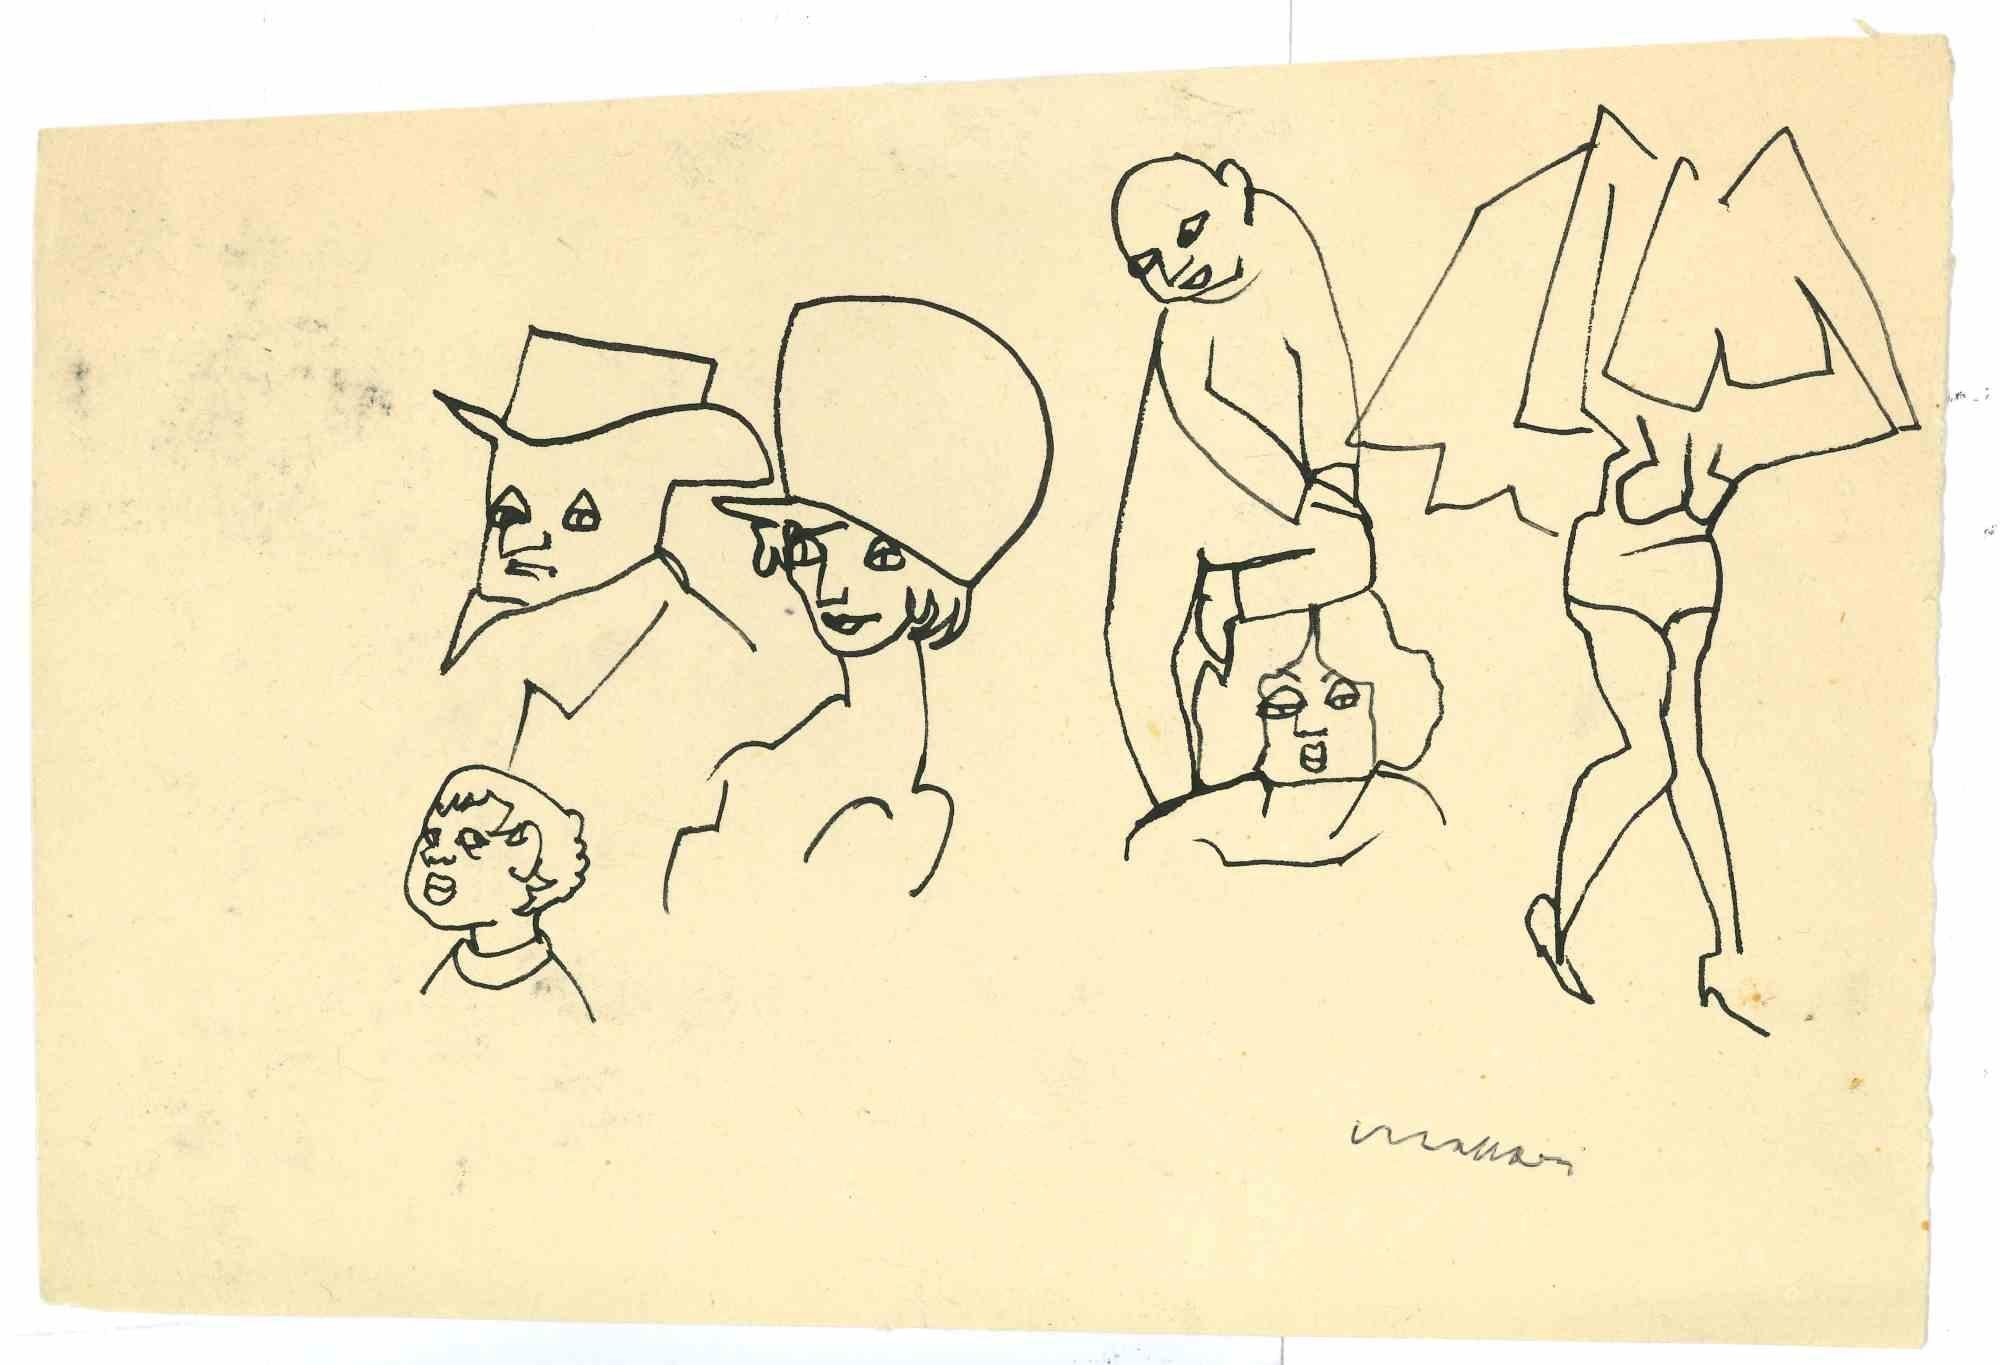 Jolly ist eine von Mino Maccari realisierte Federzeichnung  (1924-1989) in den 1930er Jahren.

Handsigniert auf der Unterseite.

Guter Zustand.

Mino Maccari (Siena, 1924-Rom, 16. Juni 1989) war ein italienischer Schriftsteller, Maler, Graveur und